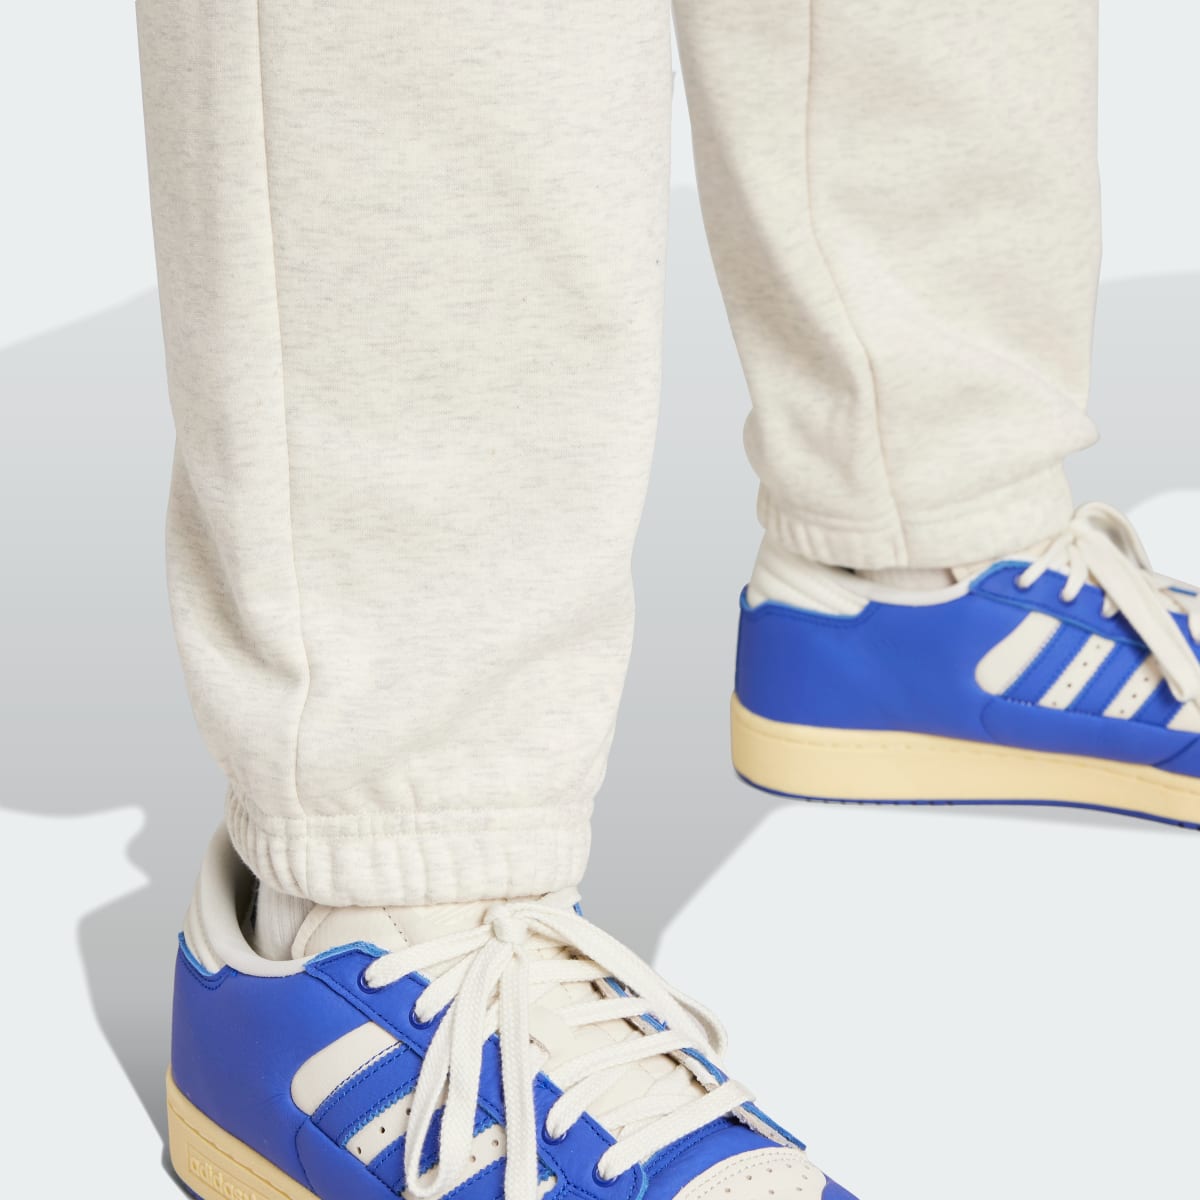 Adidas Pantaloni adidas Basketball Fleece. 7